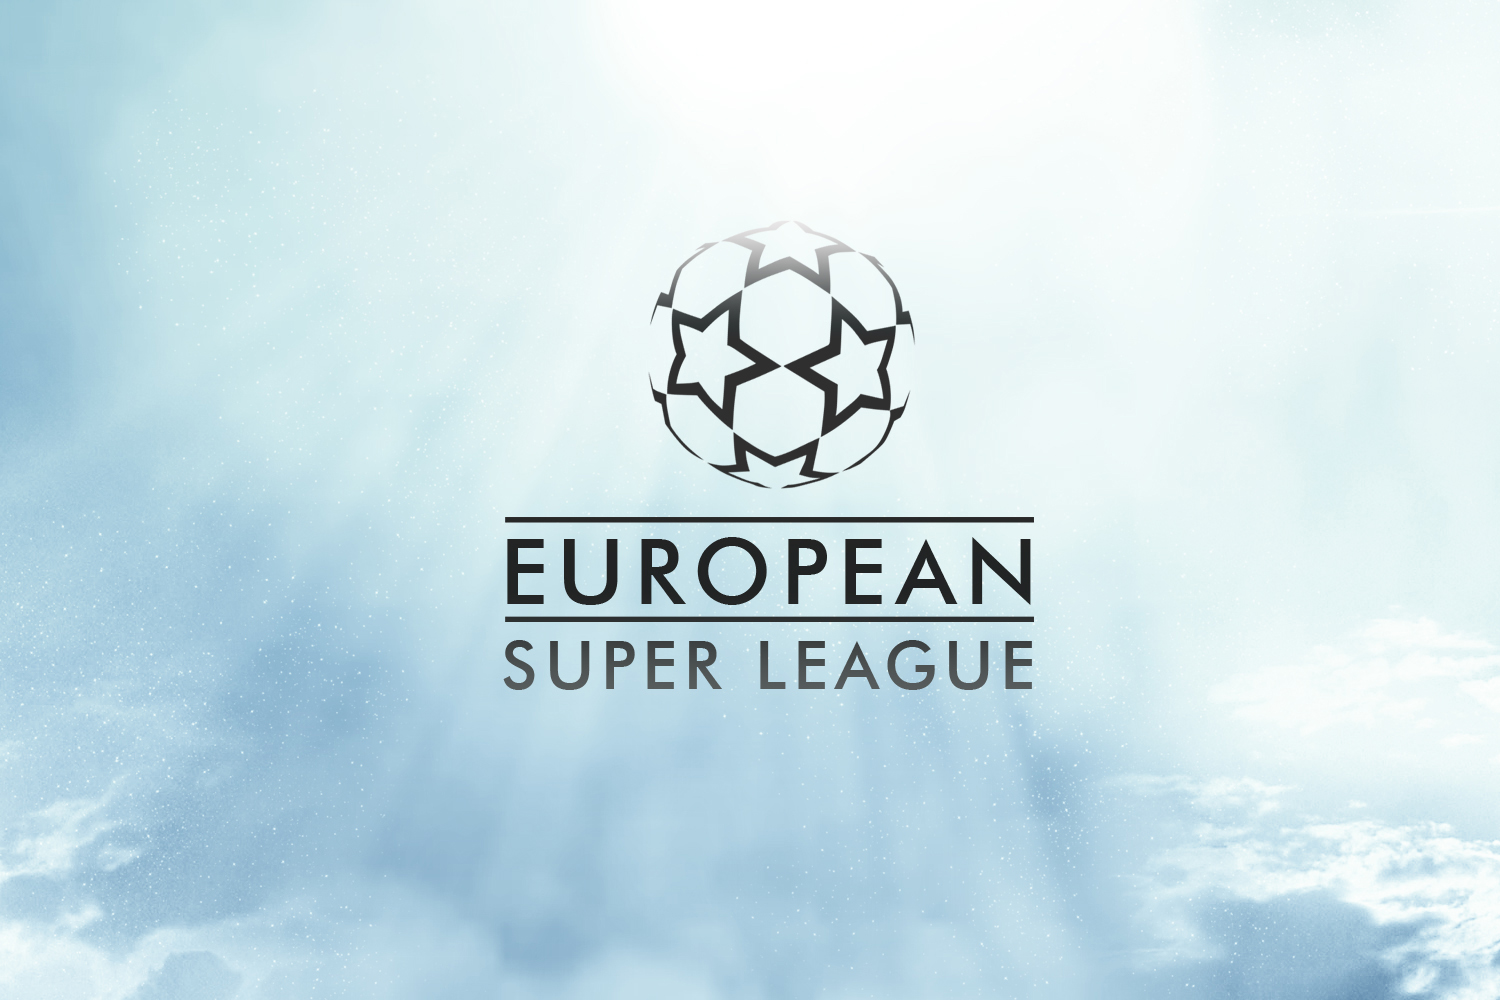 European Super League idea causing 